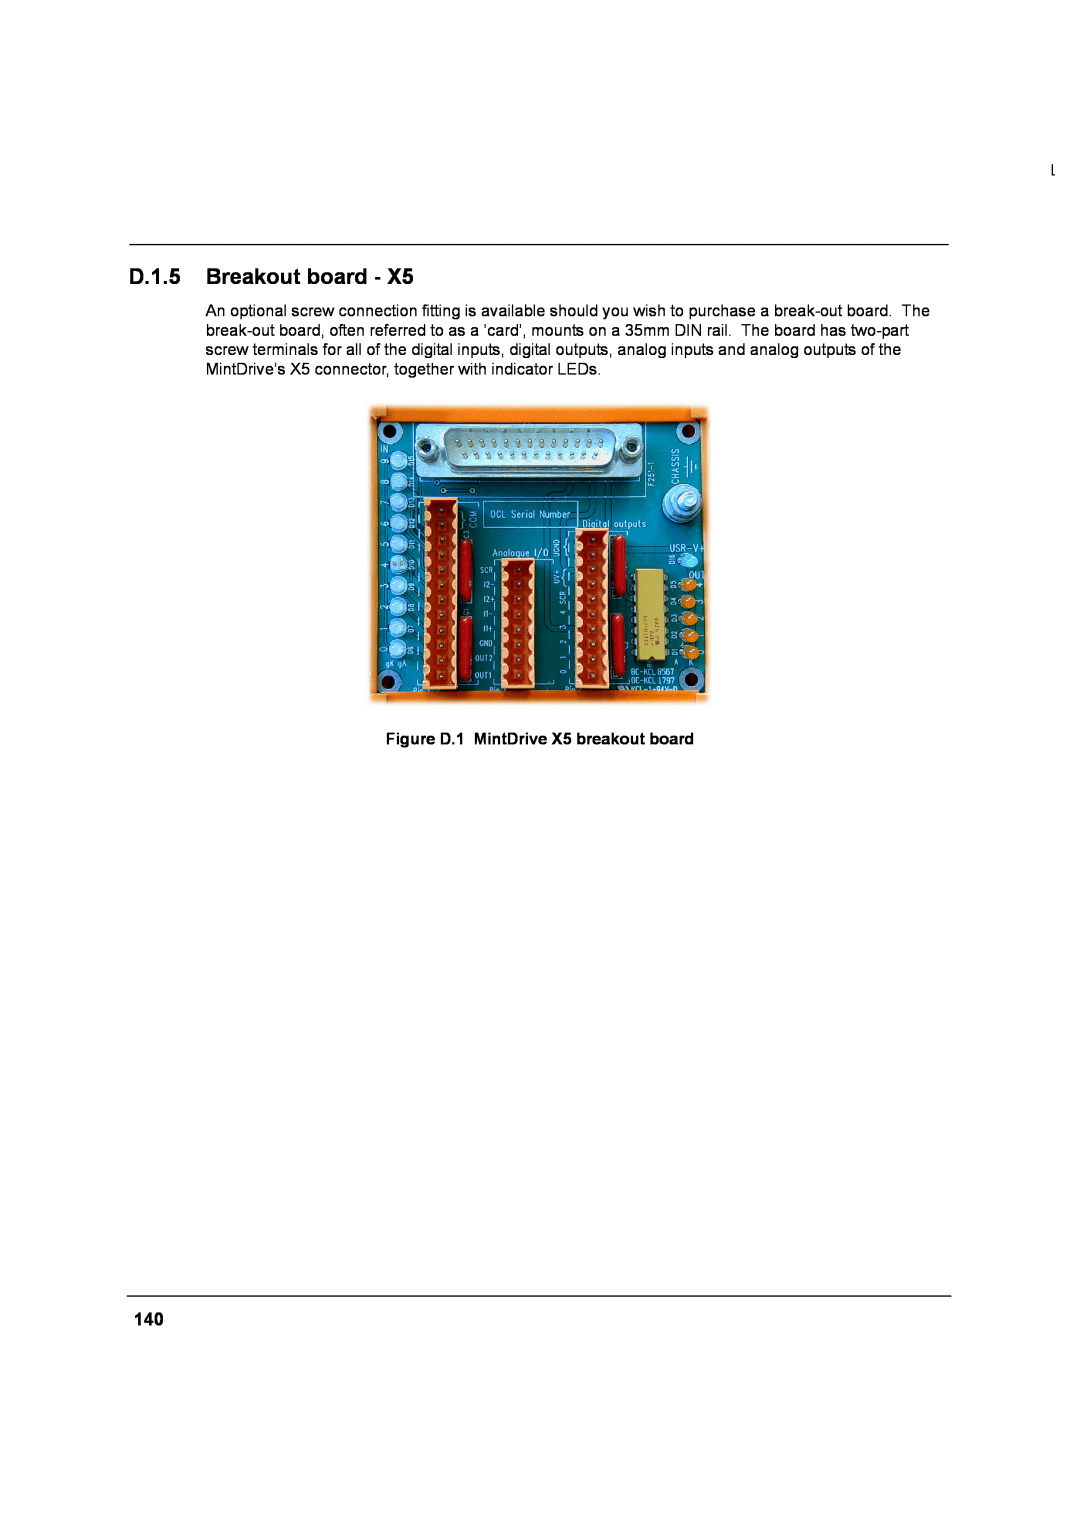 Baldor MN1274 06/2001 installation manual D.1.5 Breakout board, Figure D.1 MintDrive X5 breakout board 